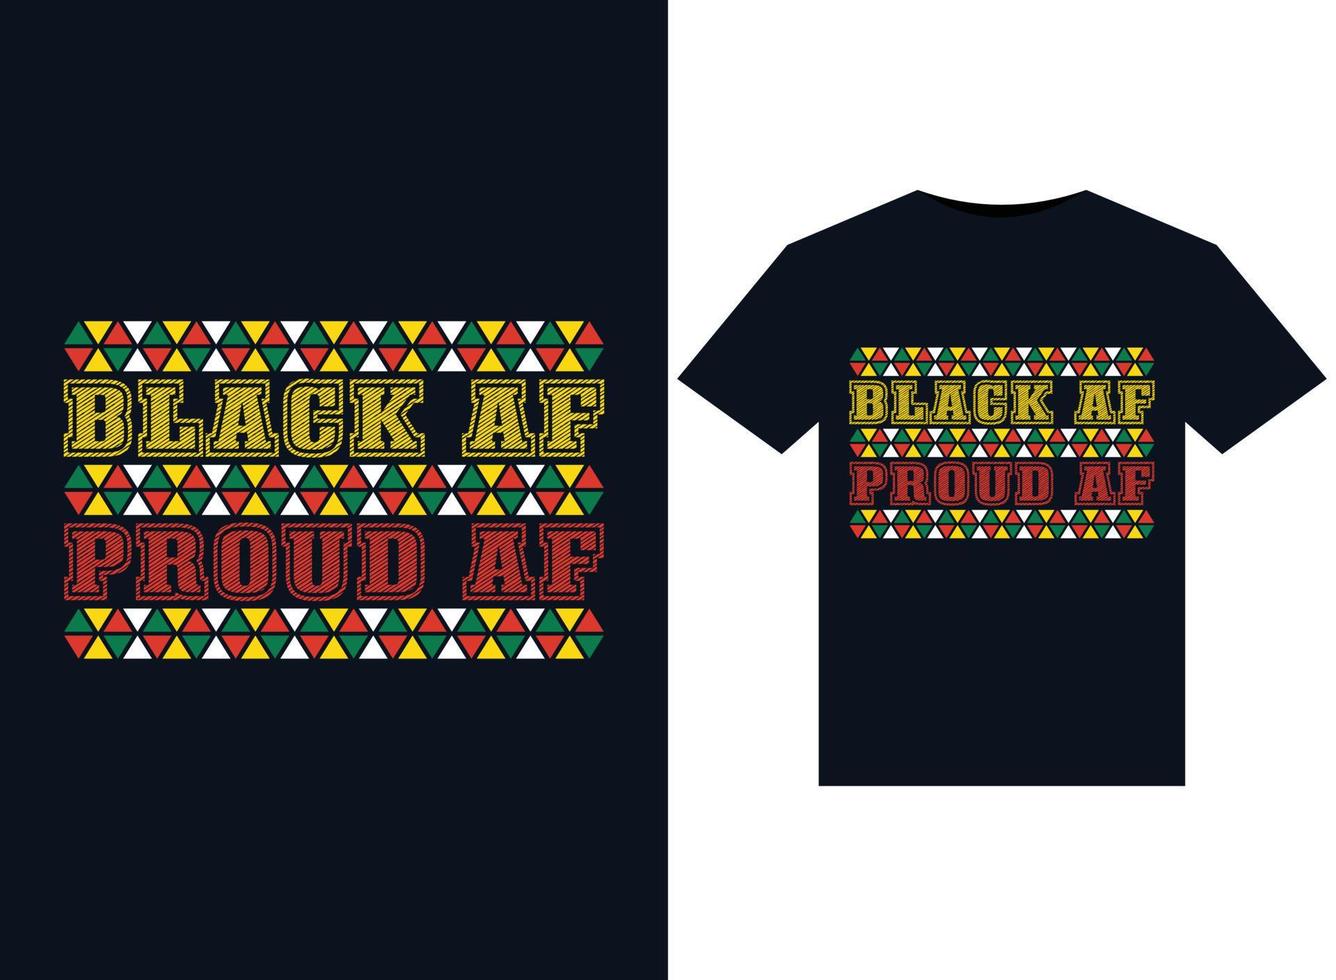 Black AF proud AF illustrations for print-ready T-Shirts design vector